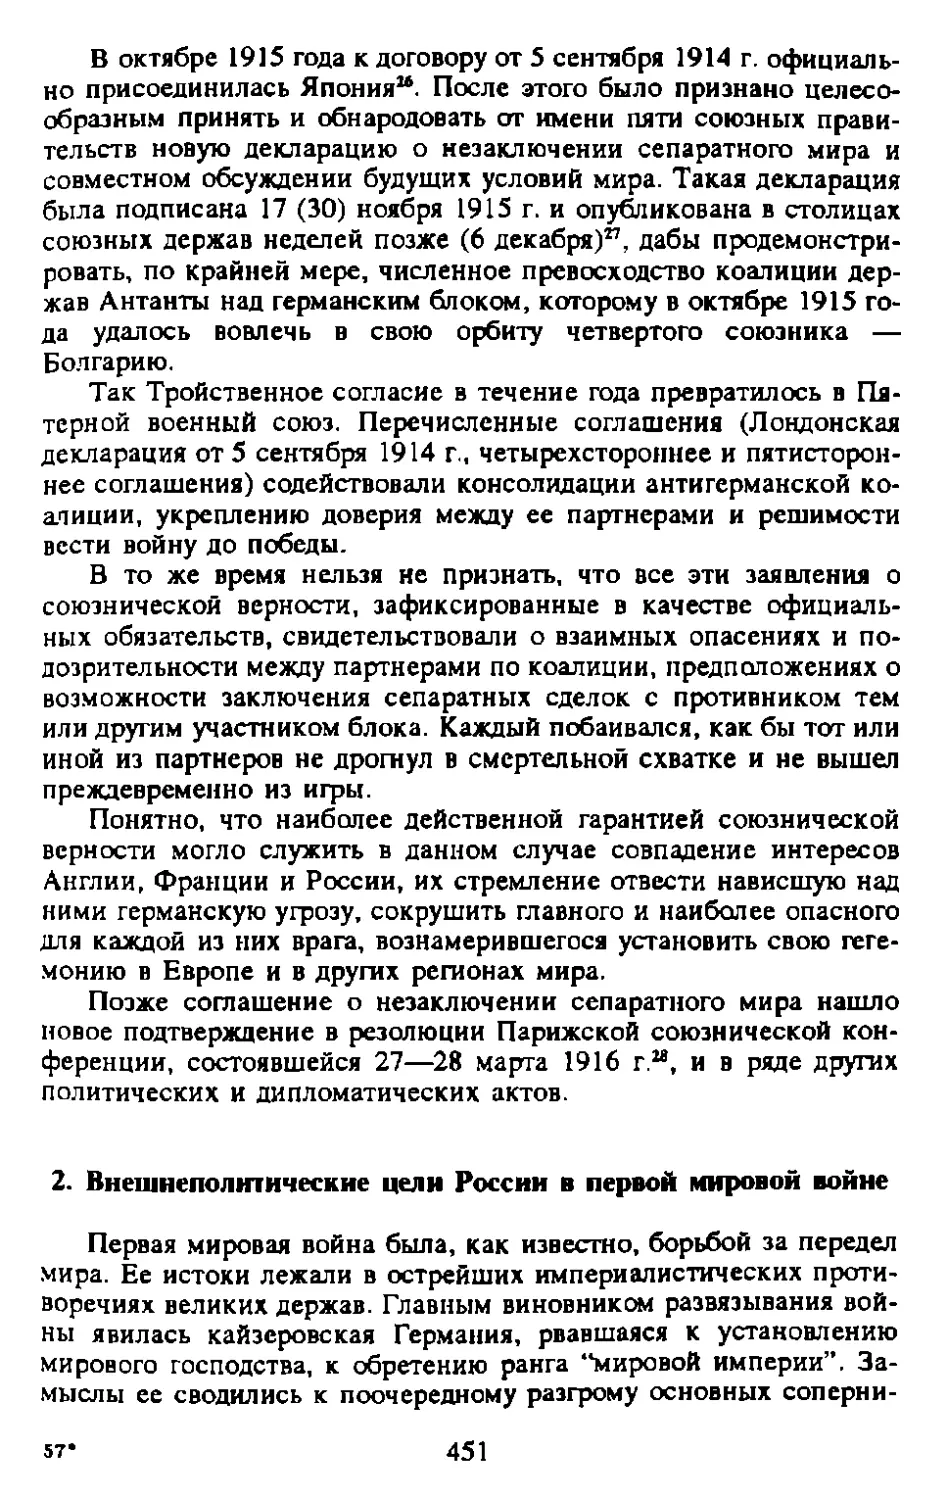 2. Внешнеполитические цели России в первой мировой войне